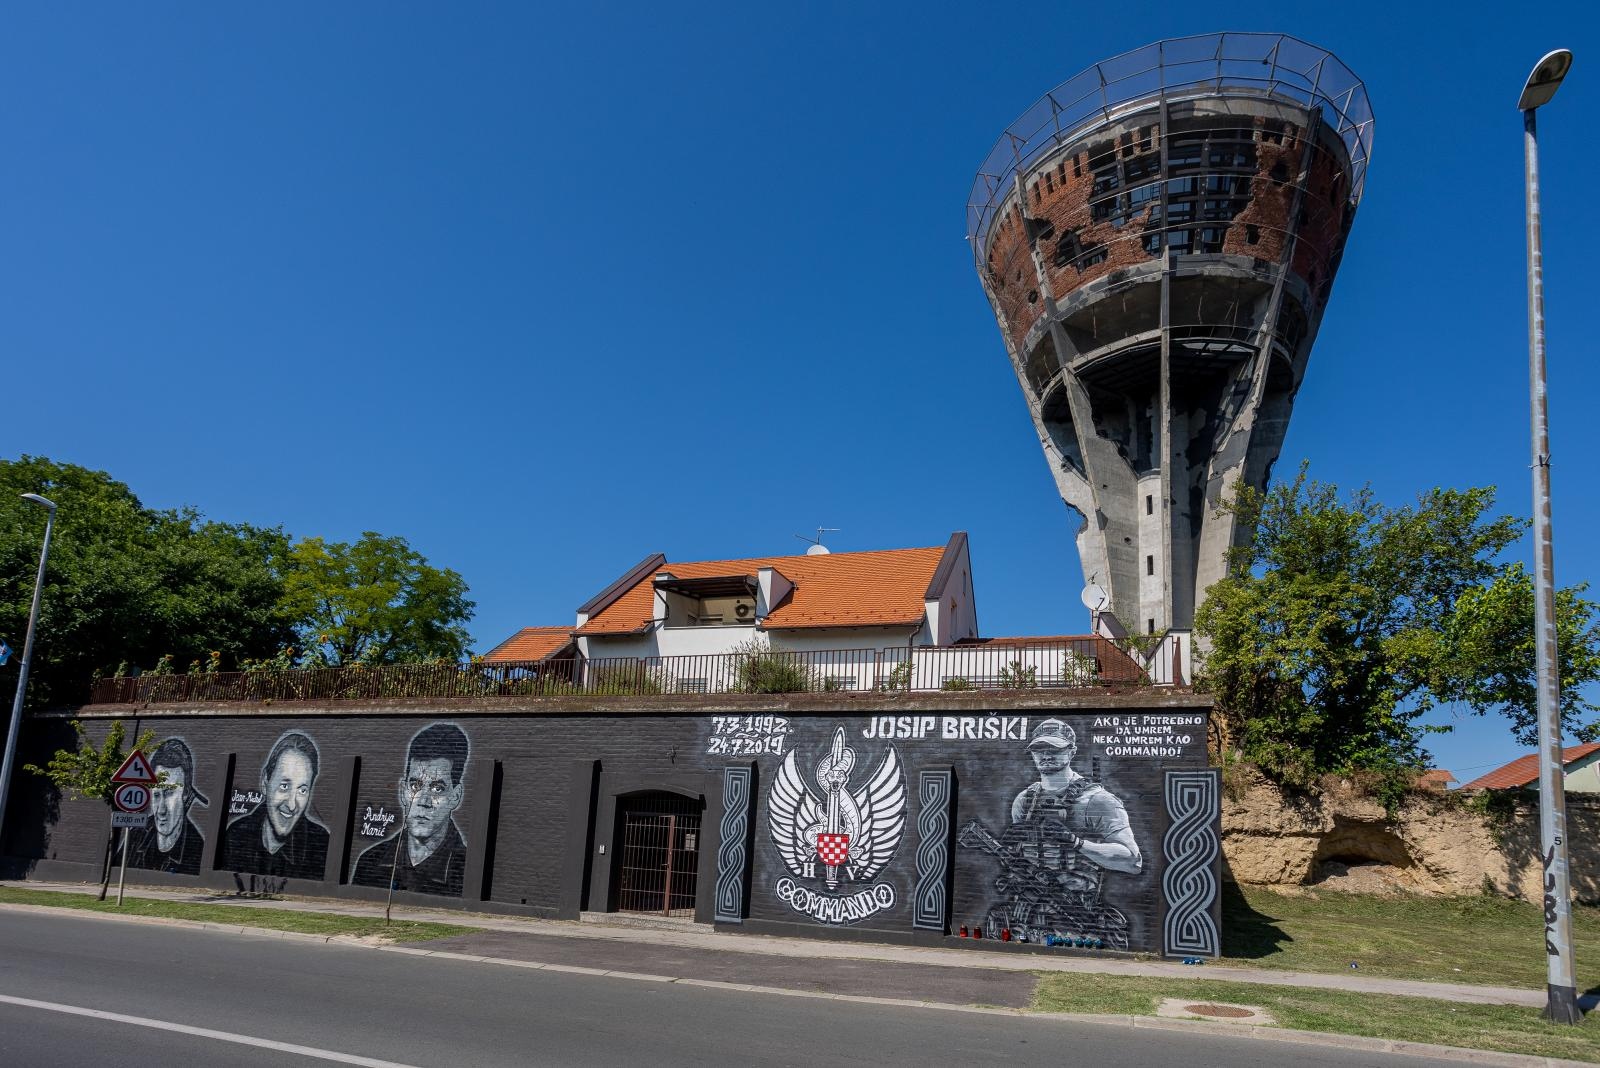 vukovarski branitelji mural